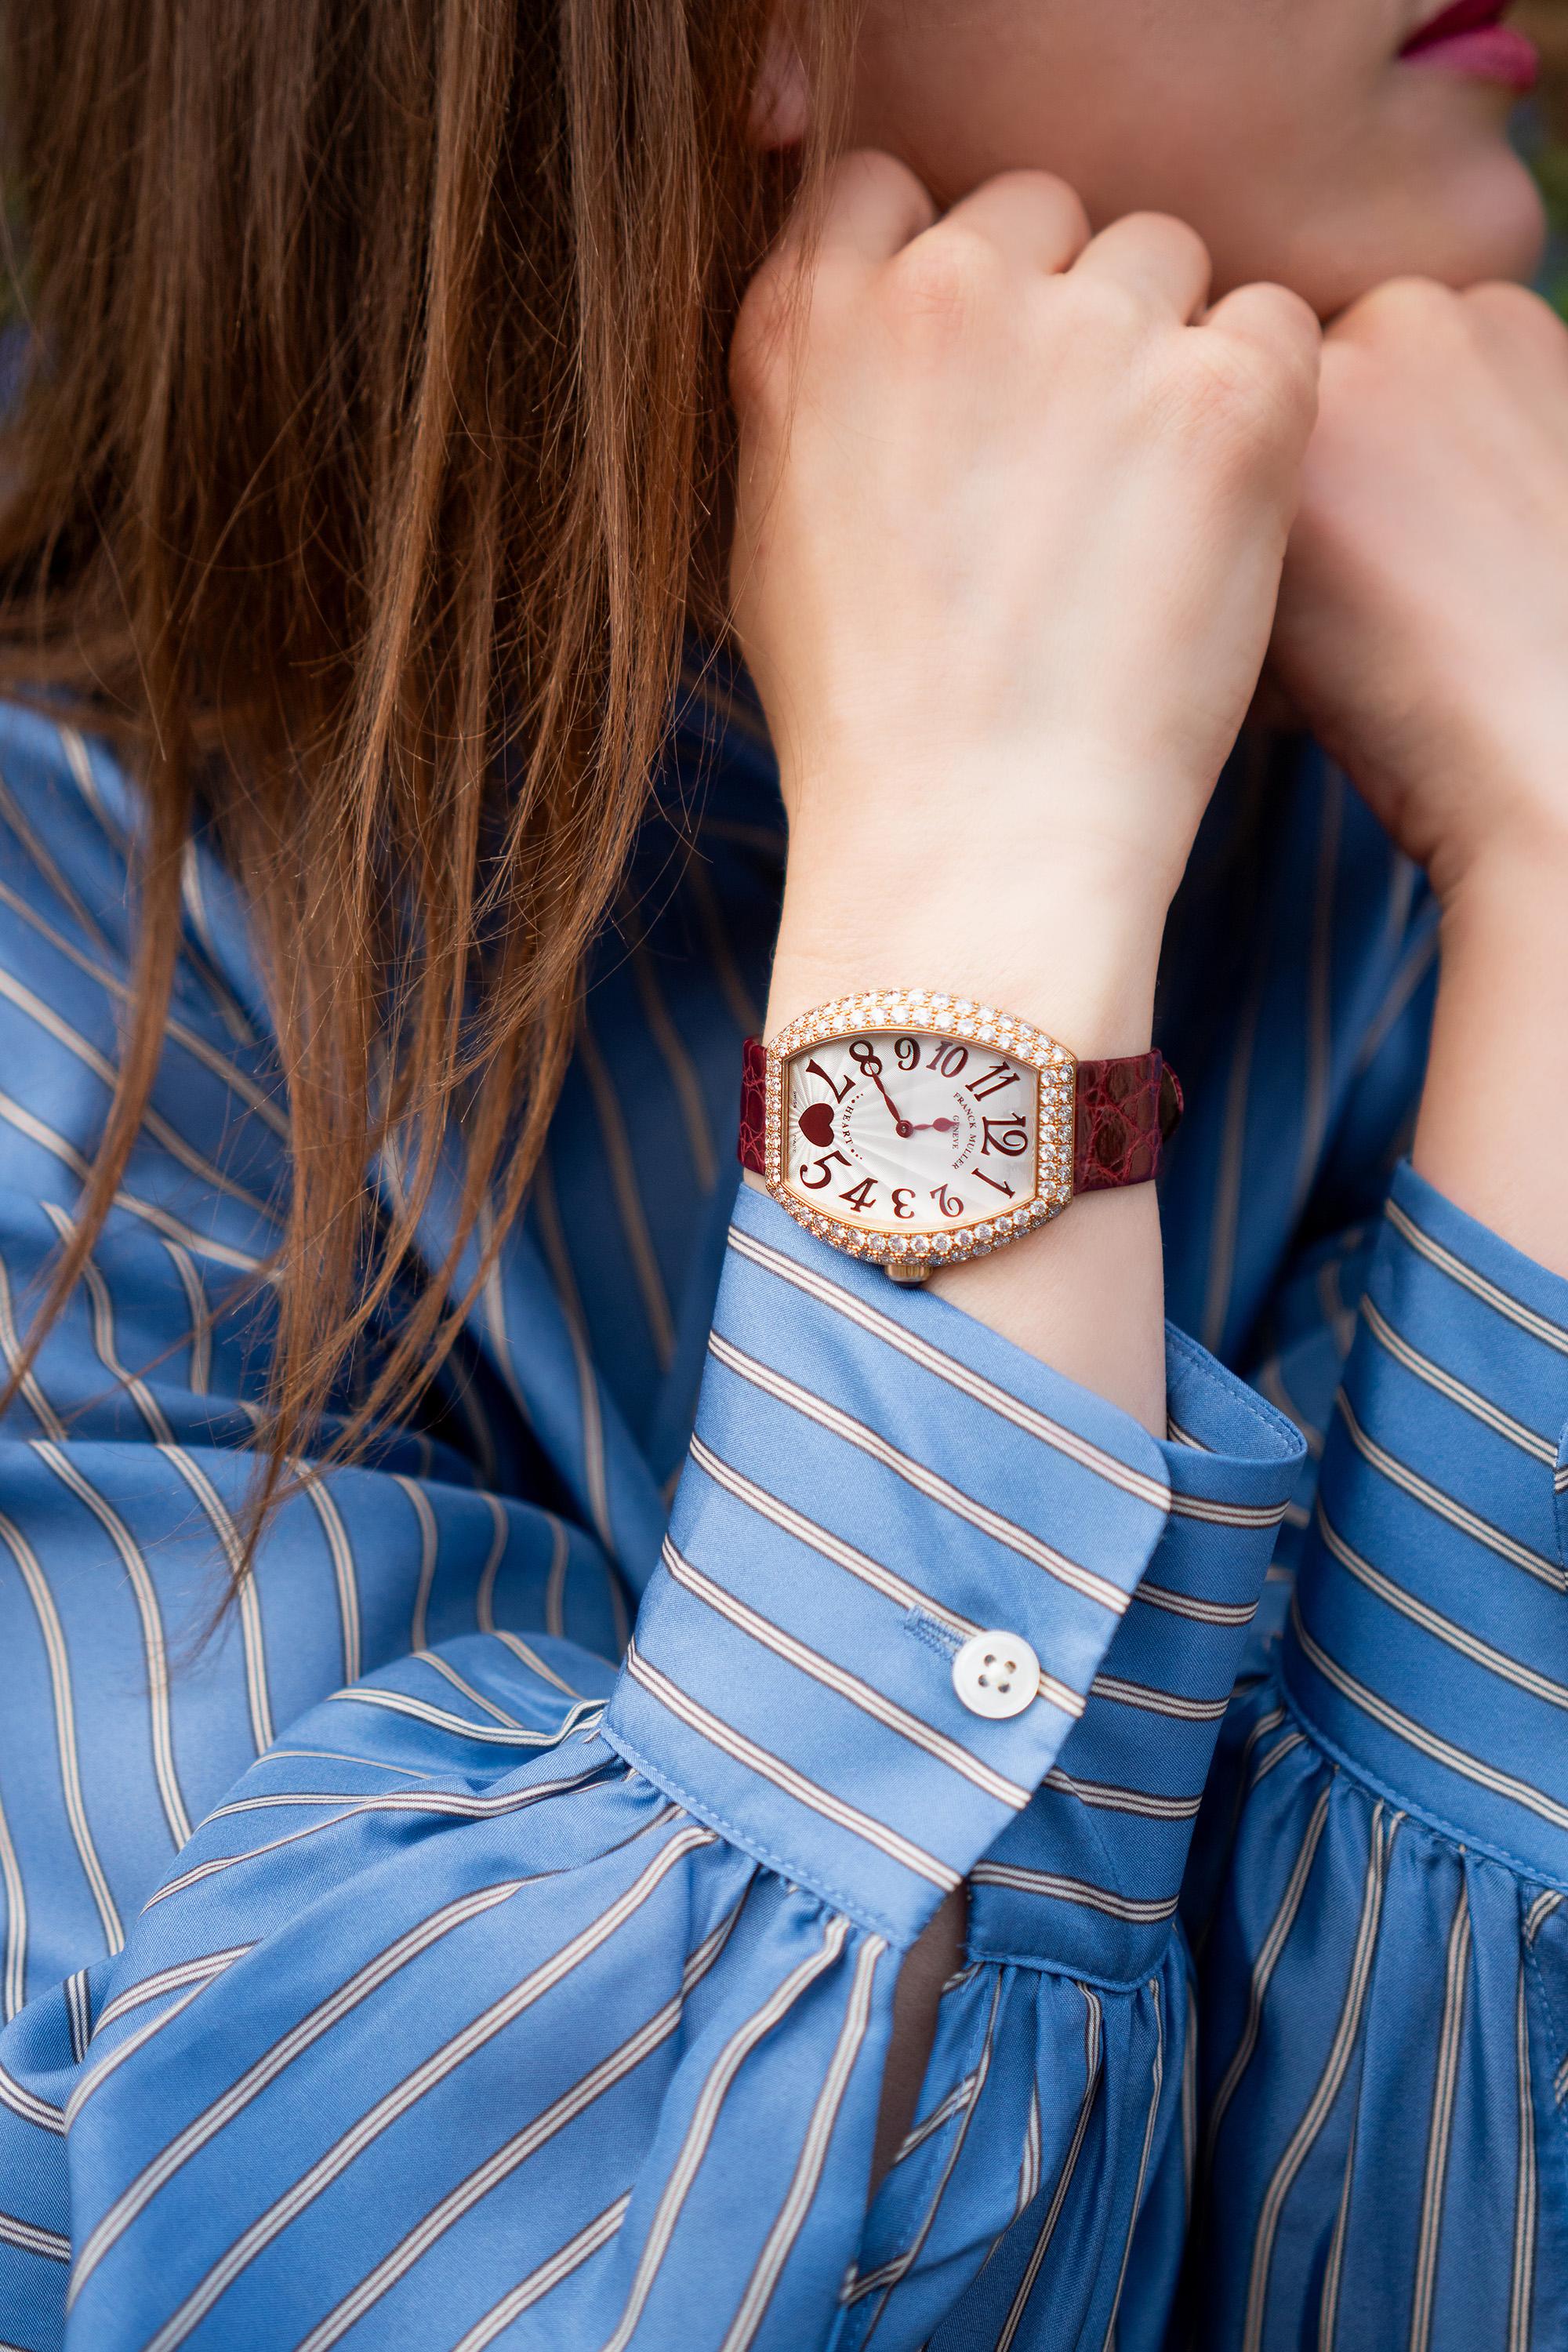 Franck Muller collection cœur en or rose 18kt montre-bracelet à quartz pour femme avec lunette sertie de diamants d'usine. 
La montre est dotée d'un cadran argenté rehaussé d'aiguilles et de chiffres arabes d'un rouge éclatant. 

Fabriquée en Suisse